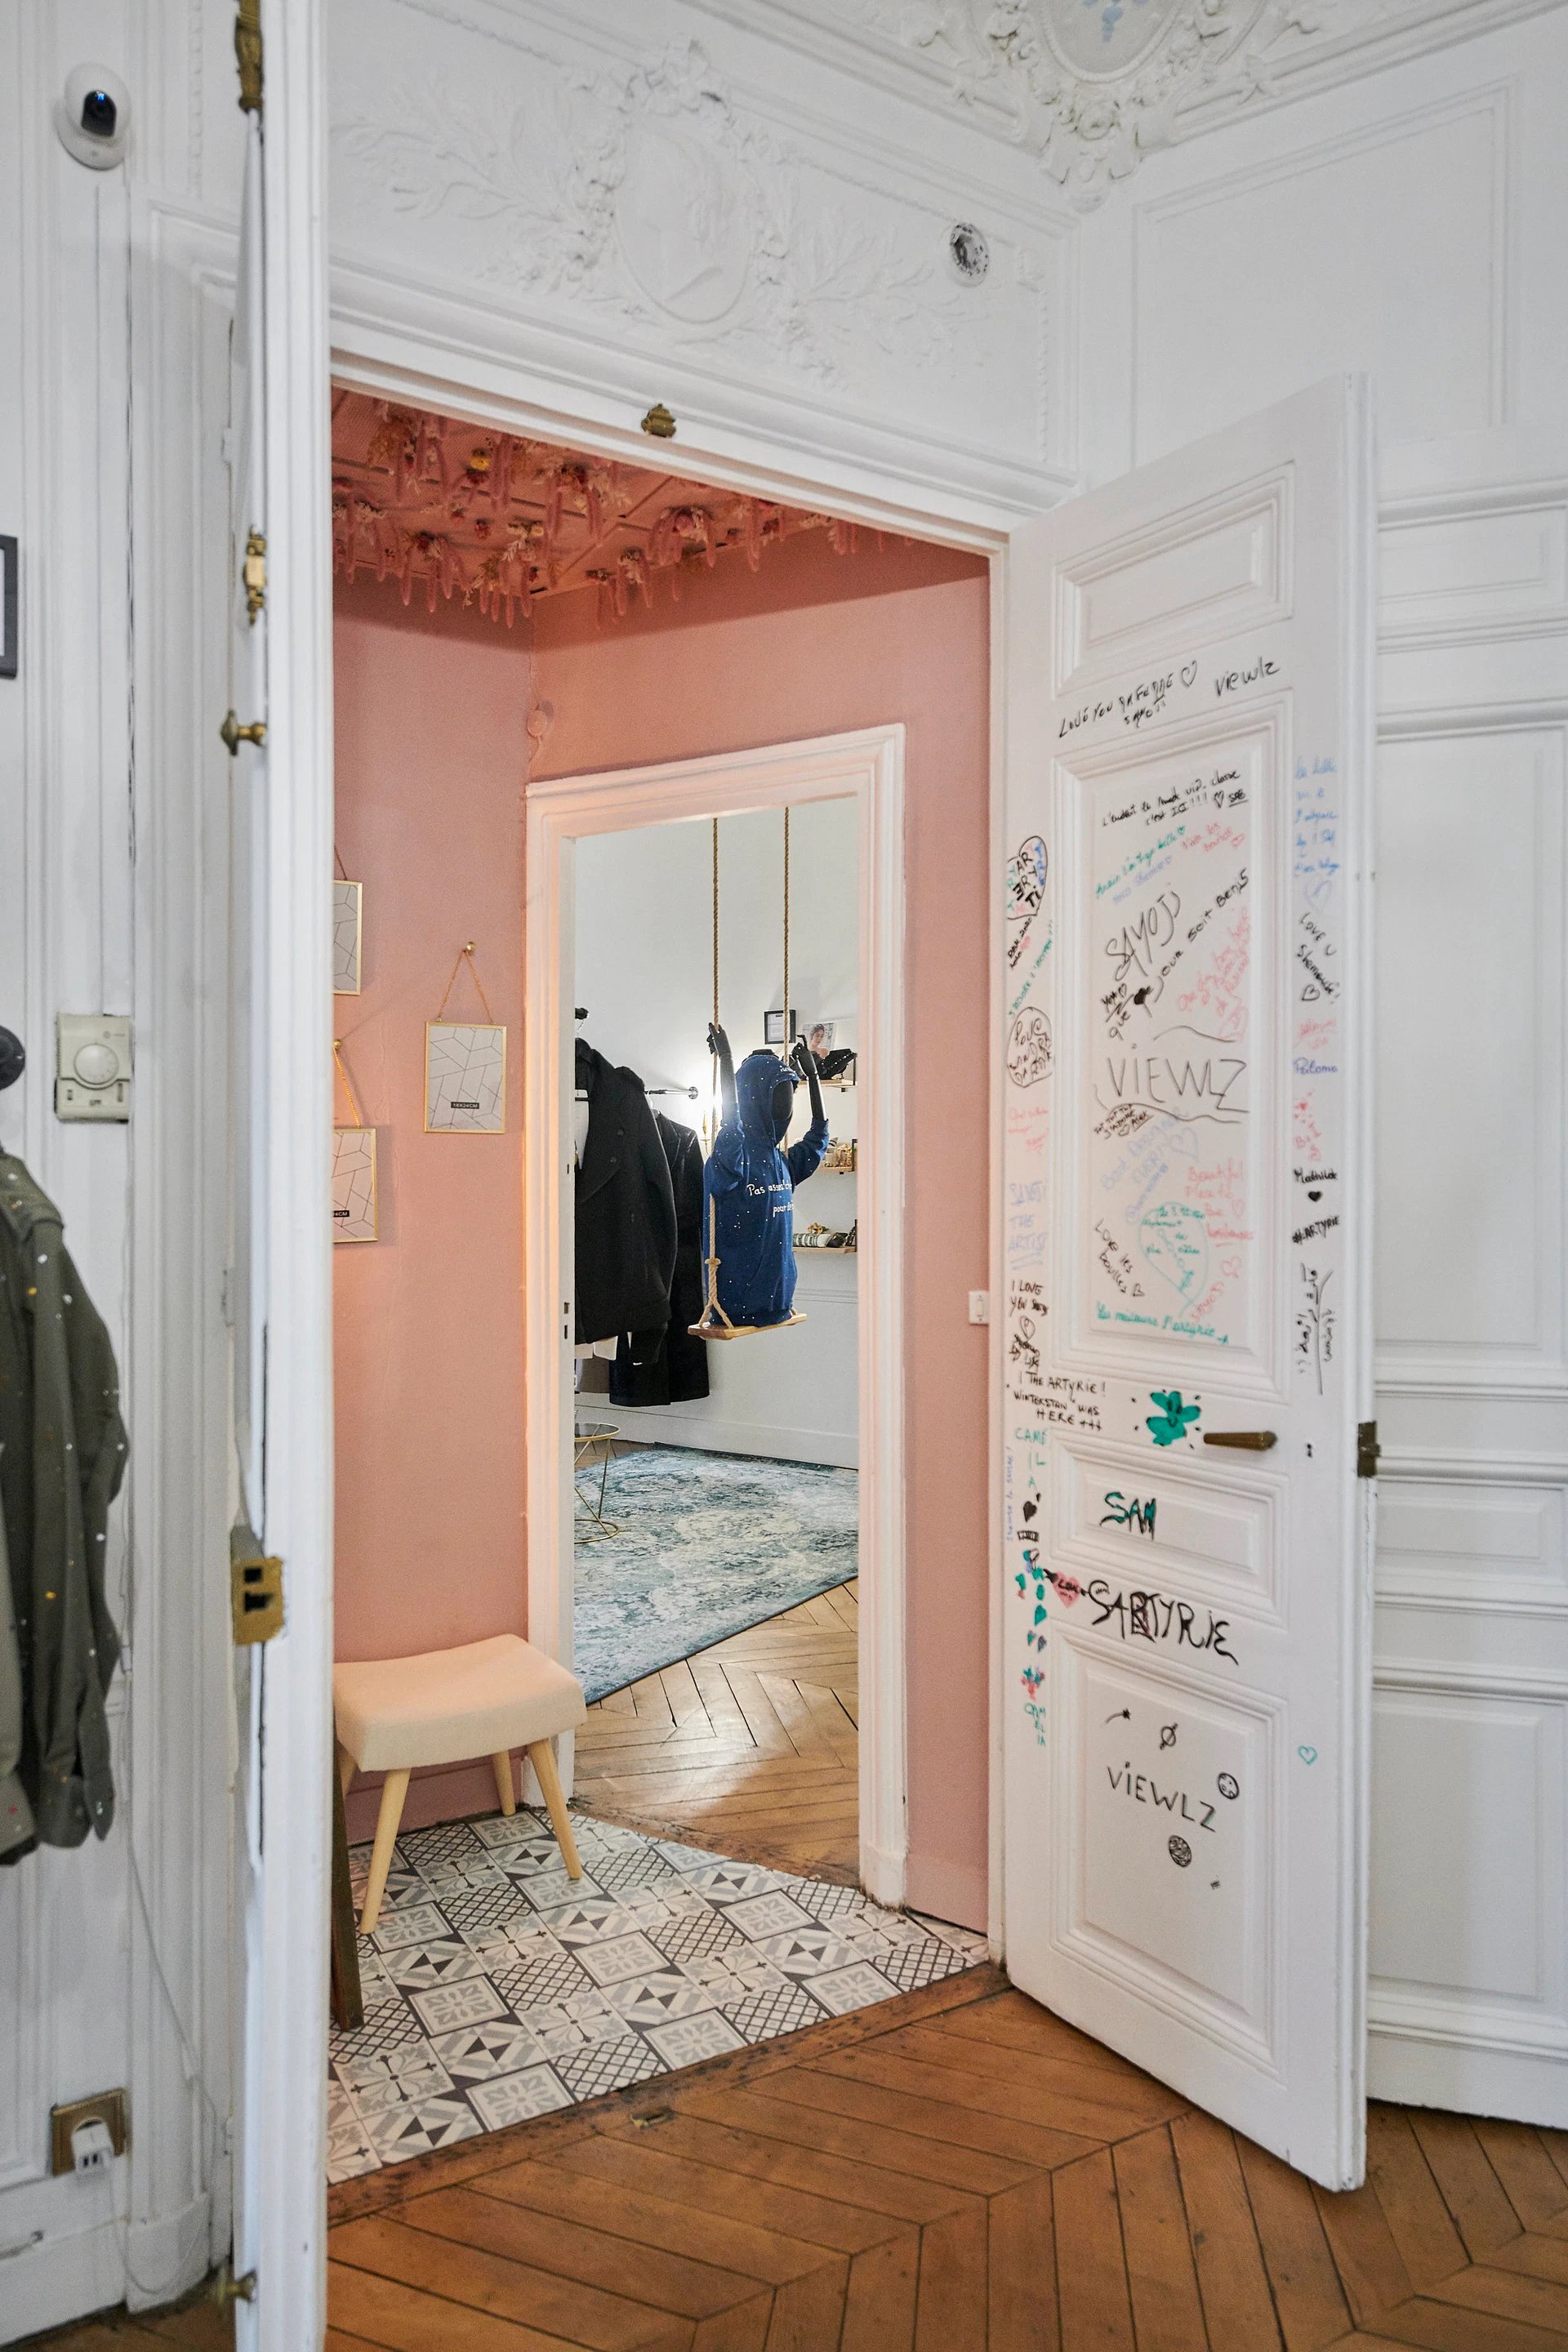 LArtyrie Concept Sore - Showroom mode- Village Normandy Paris Le Chantier - Saint-Honoré